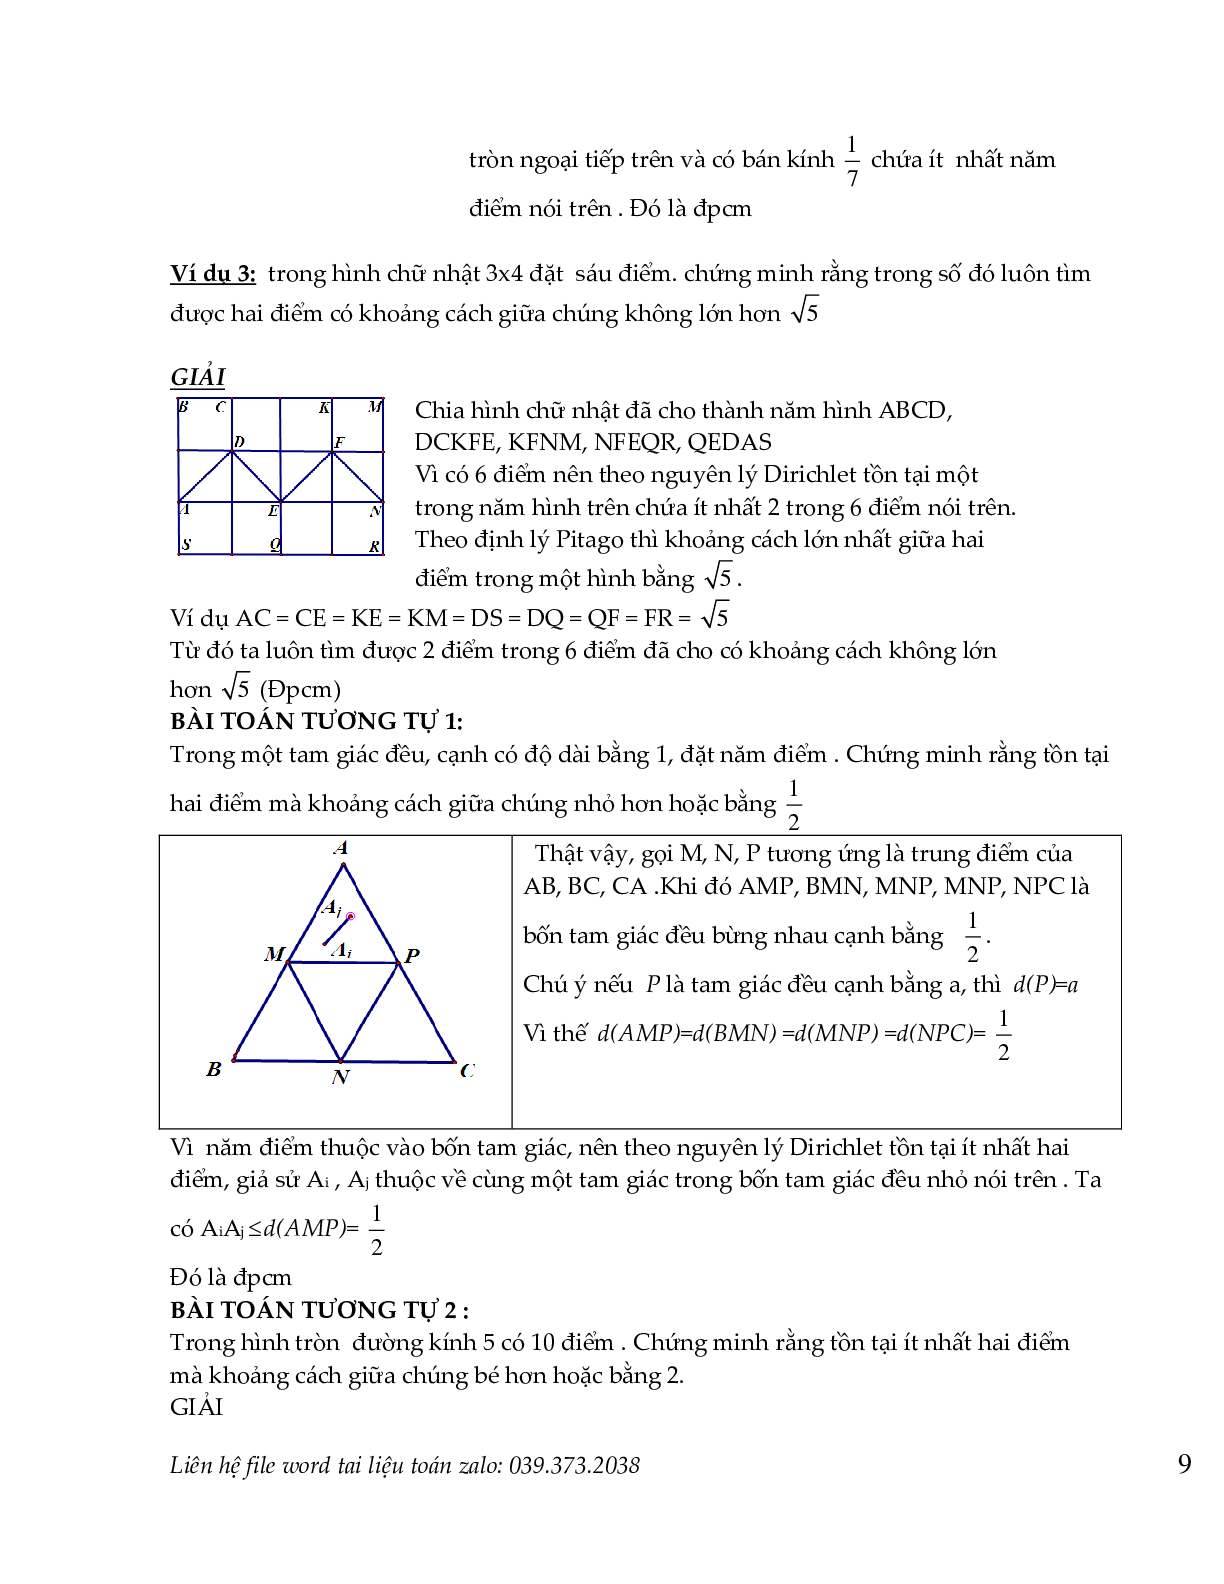 Nguyên lý dirichlet  và nguyên lý cực hạn trong toán tổ hợp (trang 8)